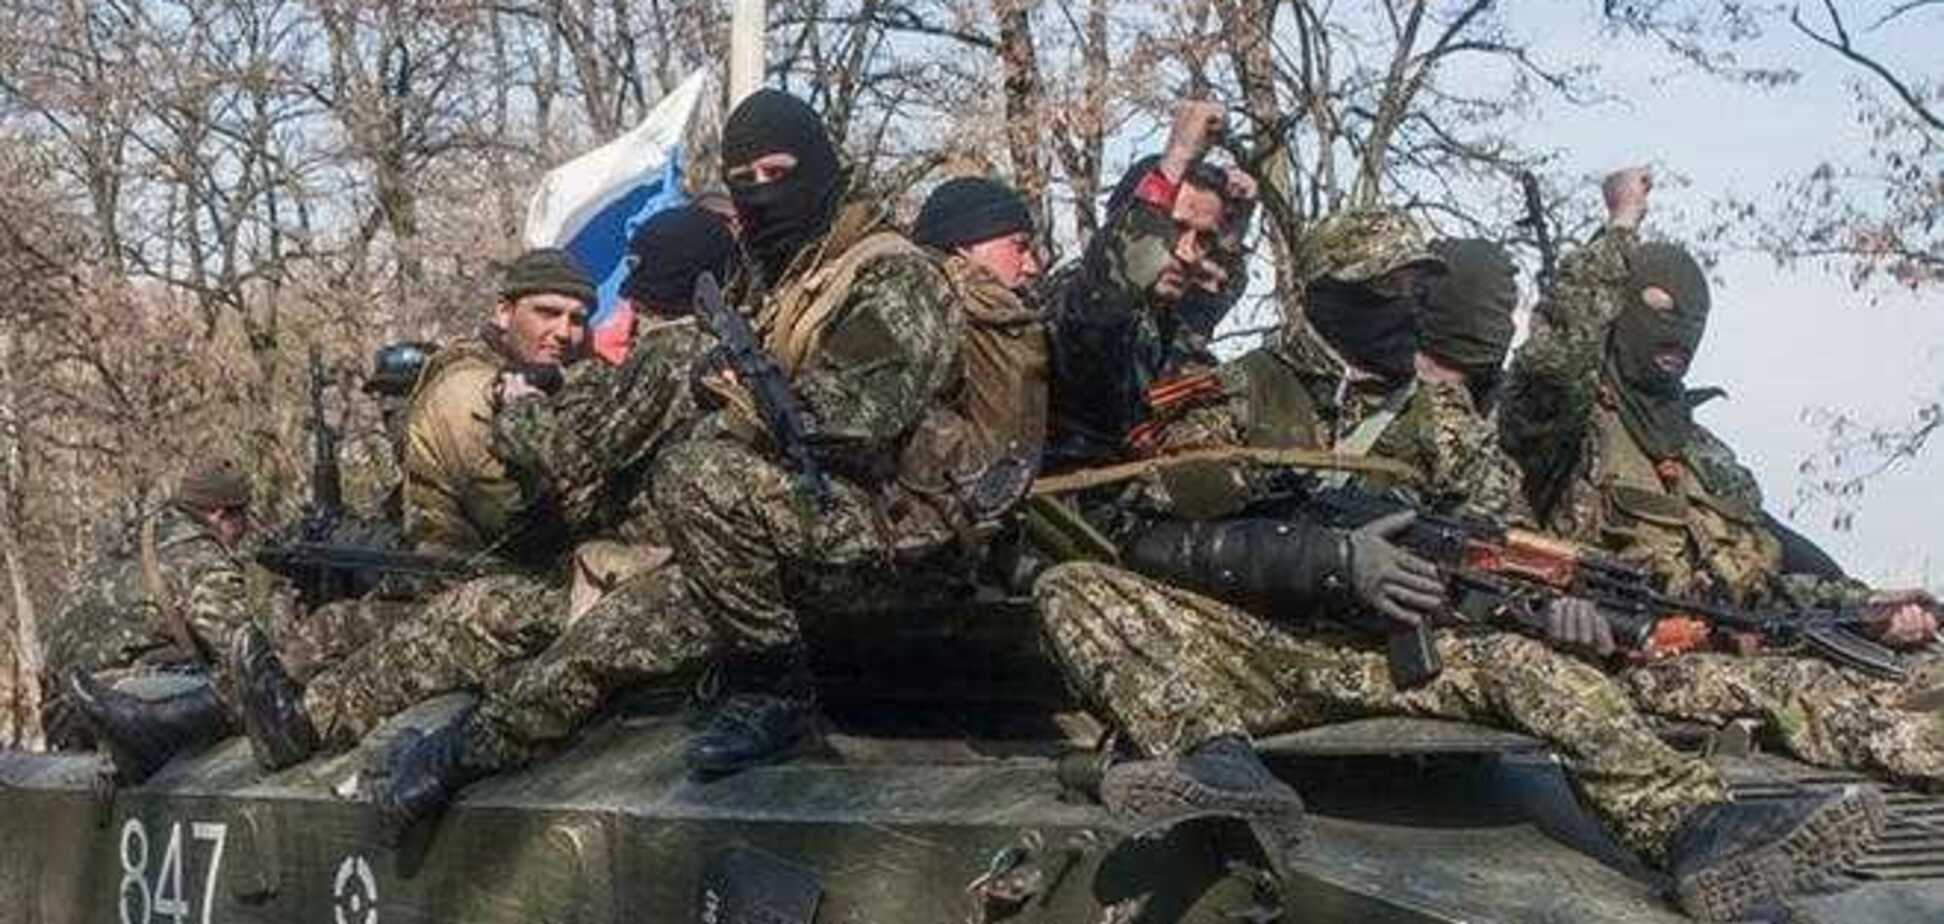 Террористы обстреляли украинских десантников - трое бандитов взяты в плен - ИС